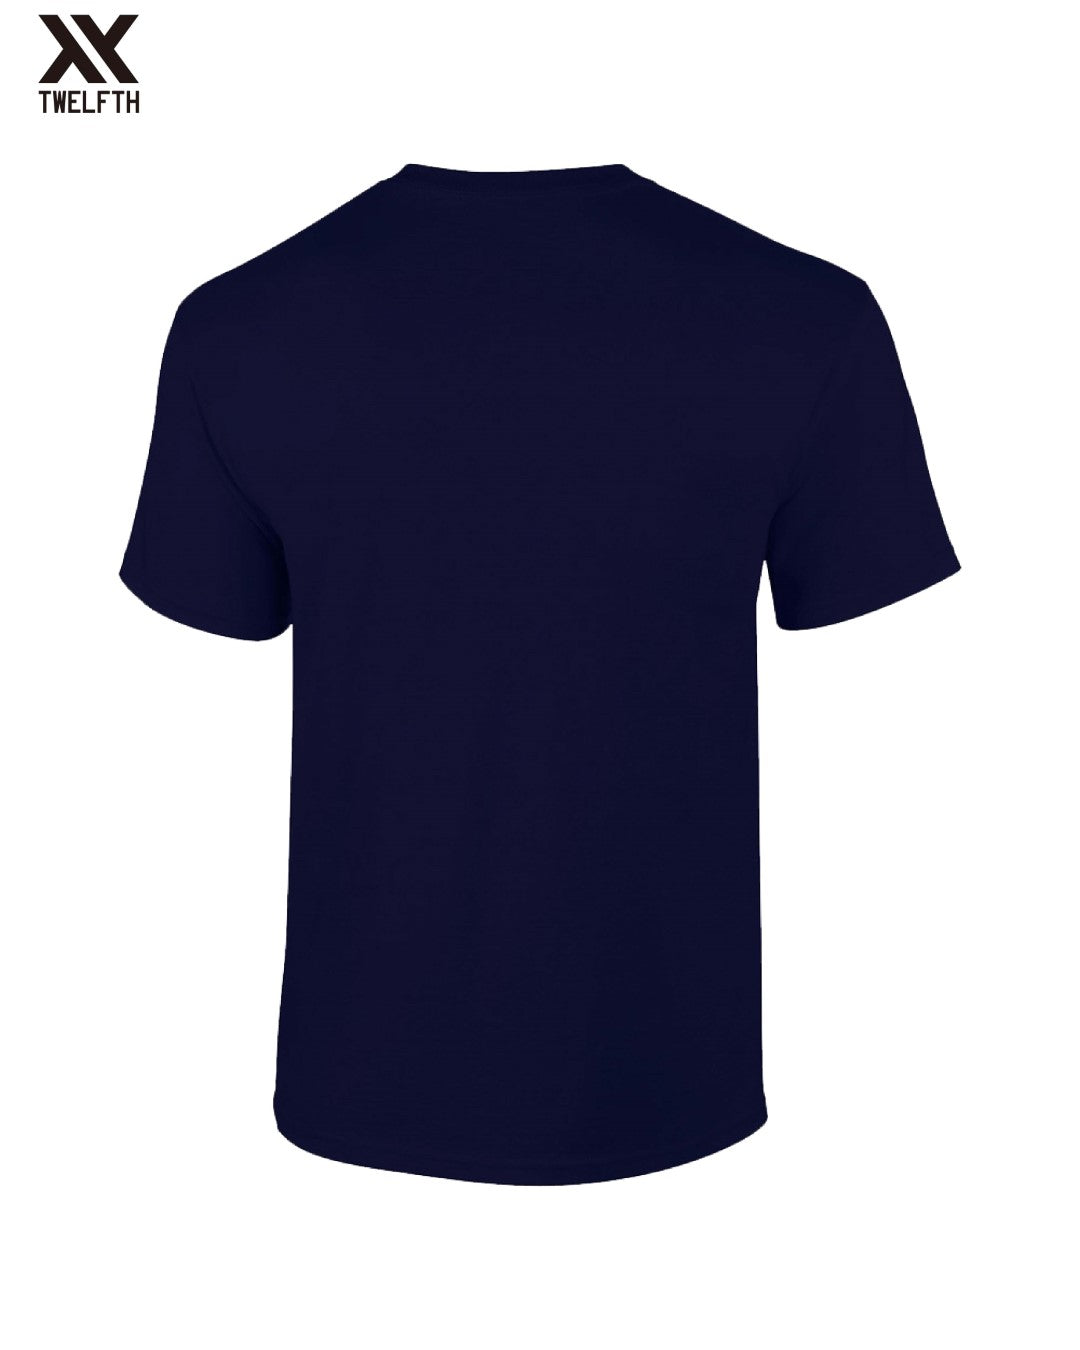 USA Crest T-Shirt - Mens